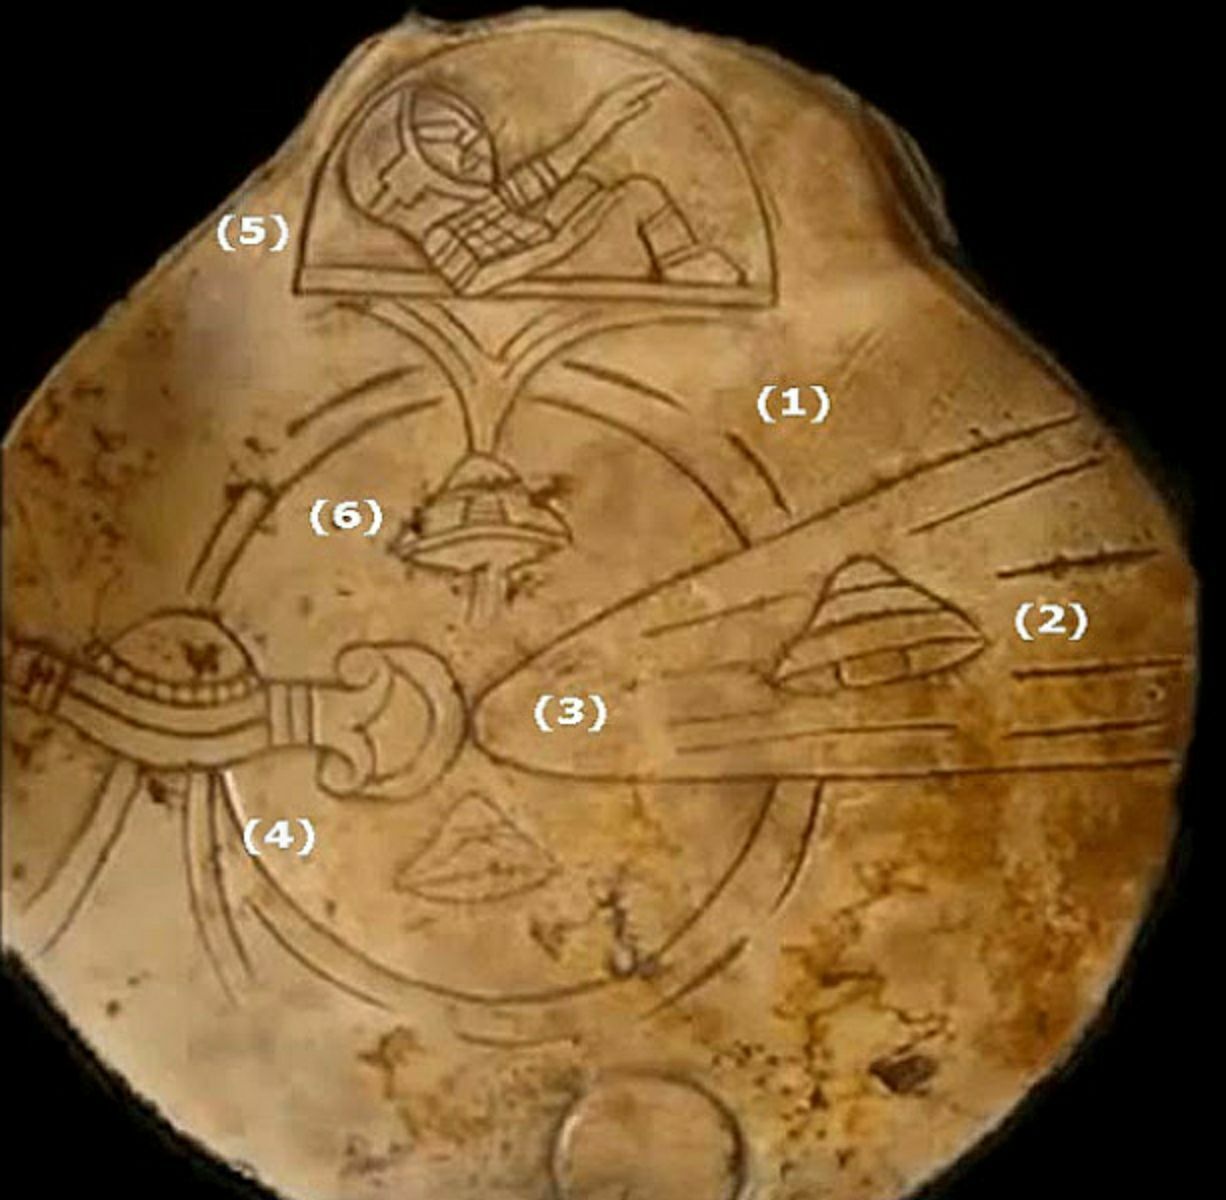 Kámen má kresbu, která připomíná kosmické lodě